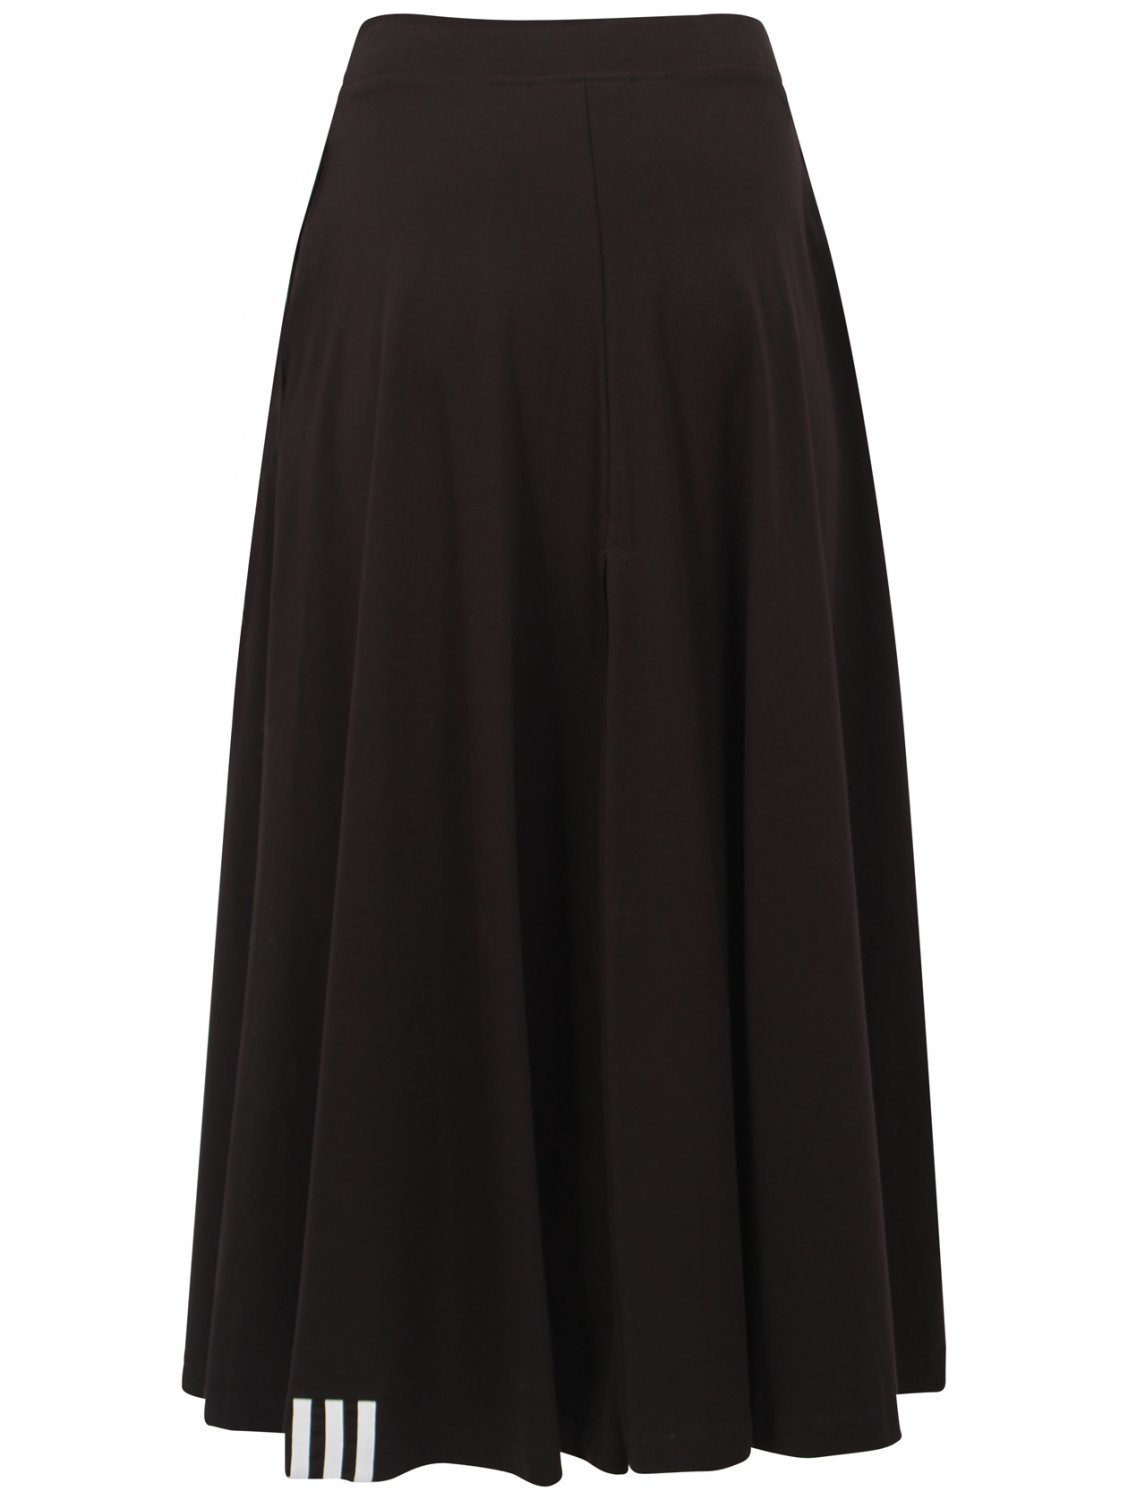 Y-3 Elegant Long Skirt Black in Black | Lyst